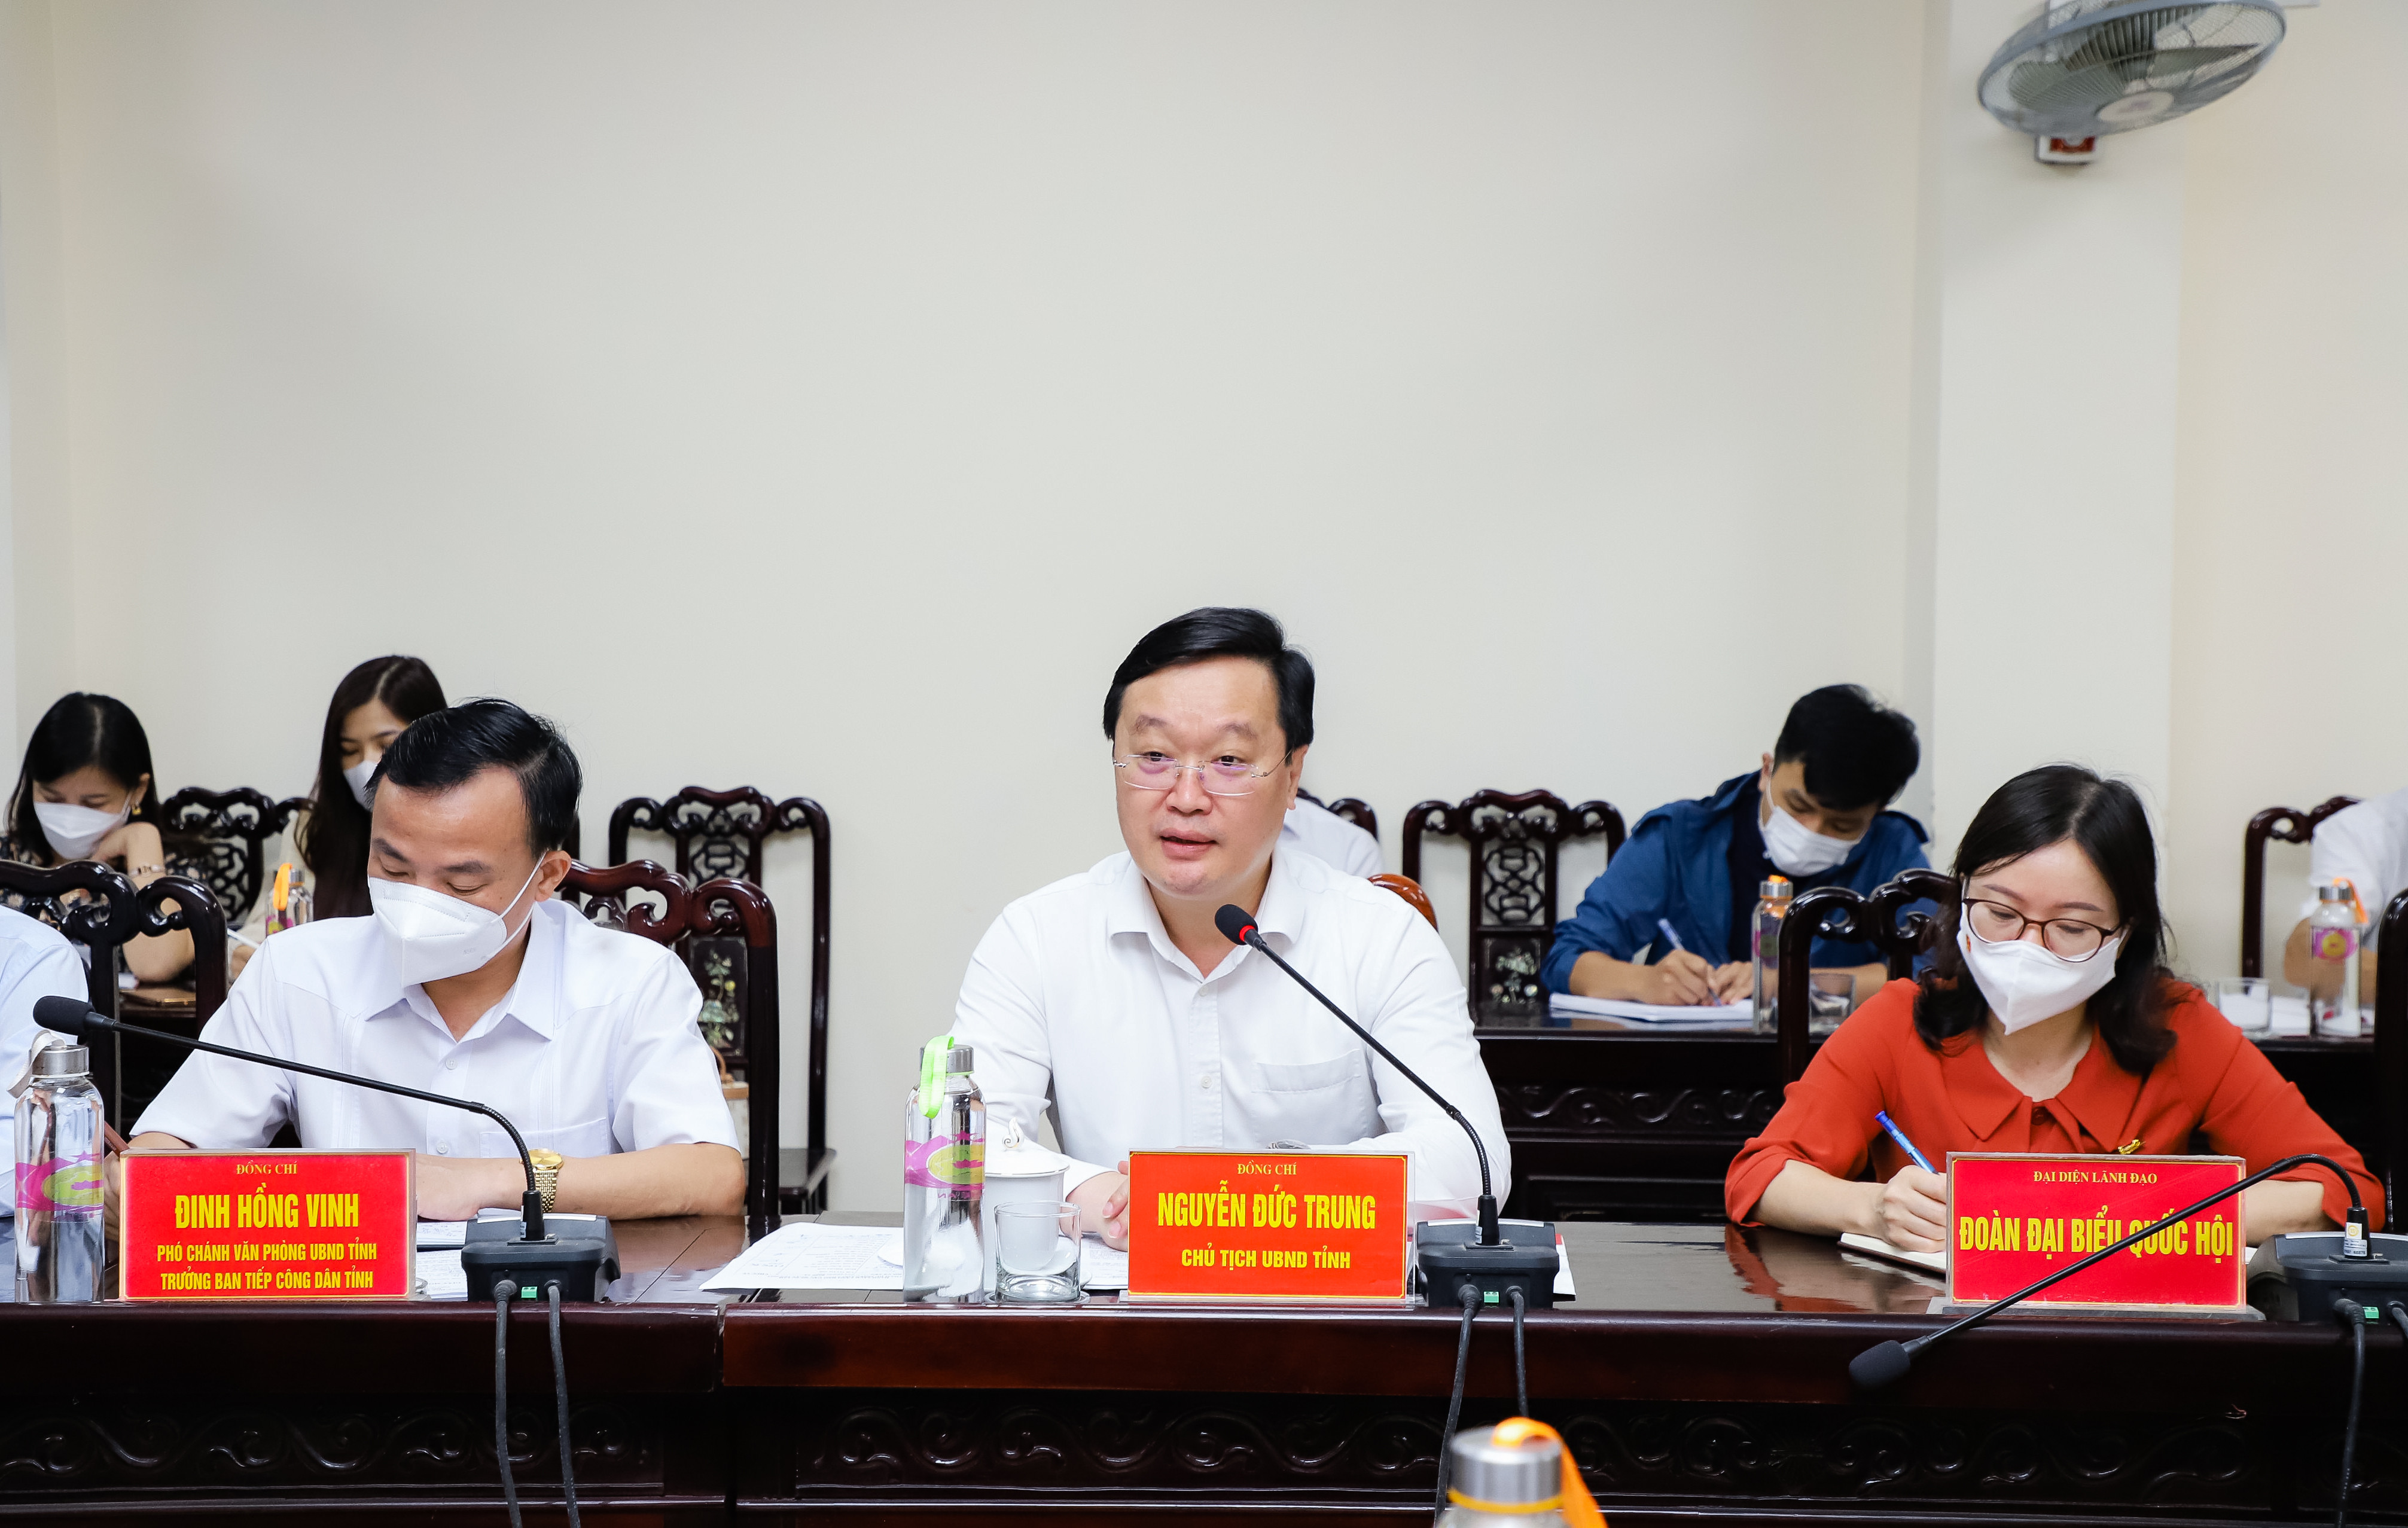 Đồng chí Nguyễn Đức Trung - Chủ tịch UBND tỉnh kết luận phiên tiếp công dân. Ảnh: Phạm Bằng